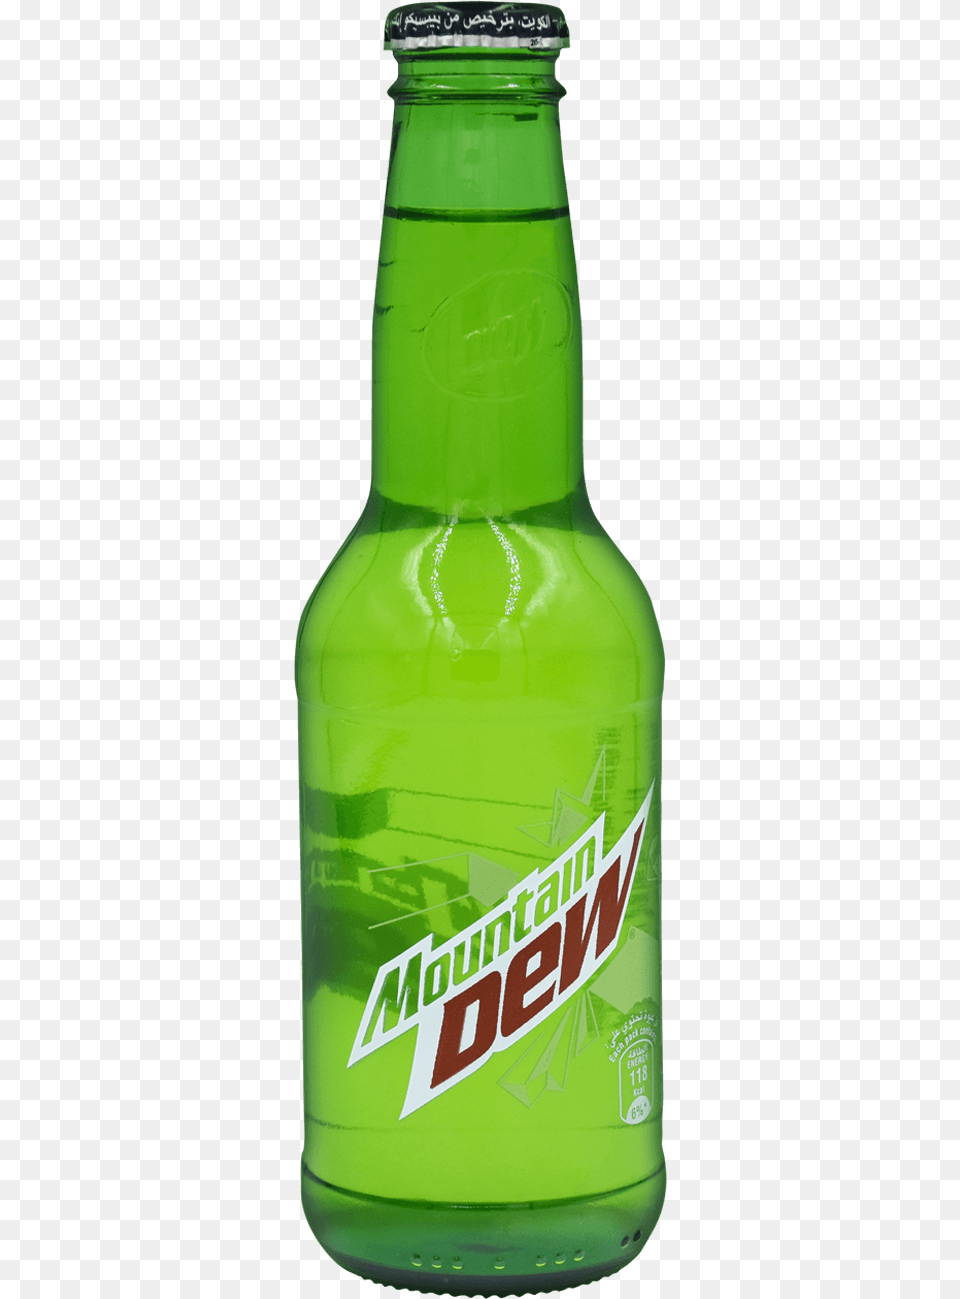 Mountain Dew Bottle, Alcohol, Beer, Beverage, Beer Bottle Png Image